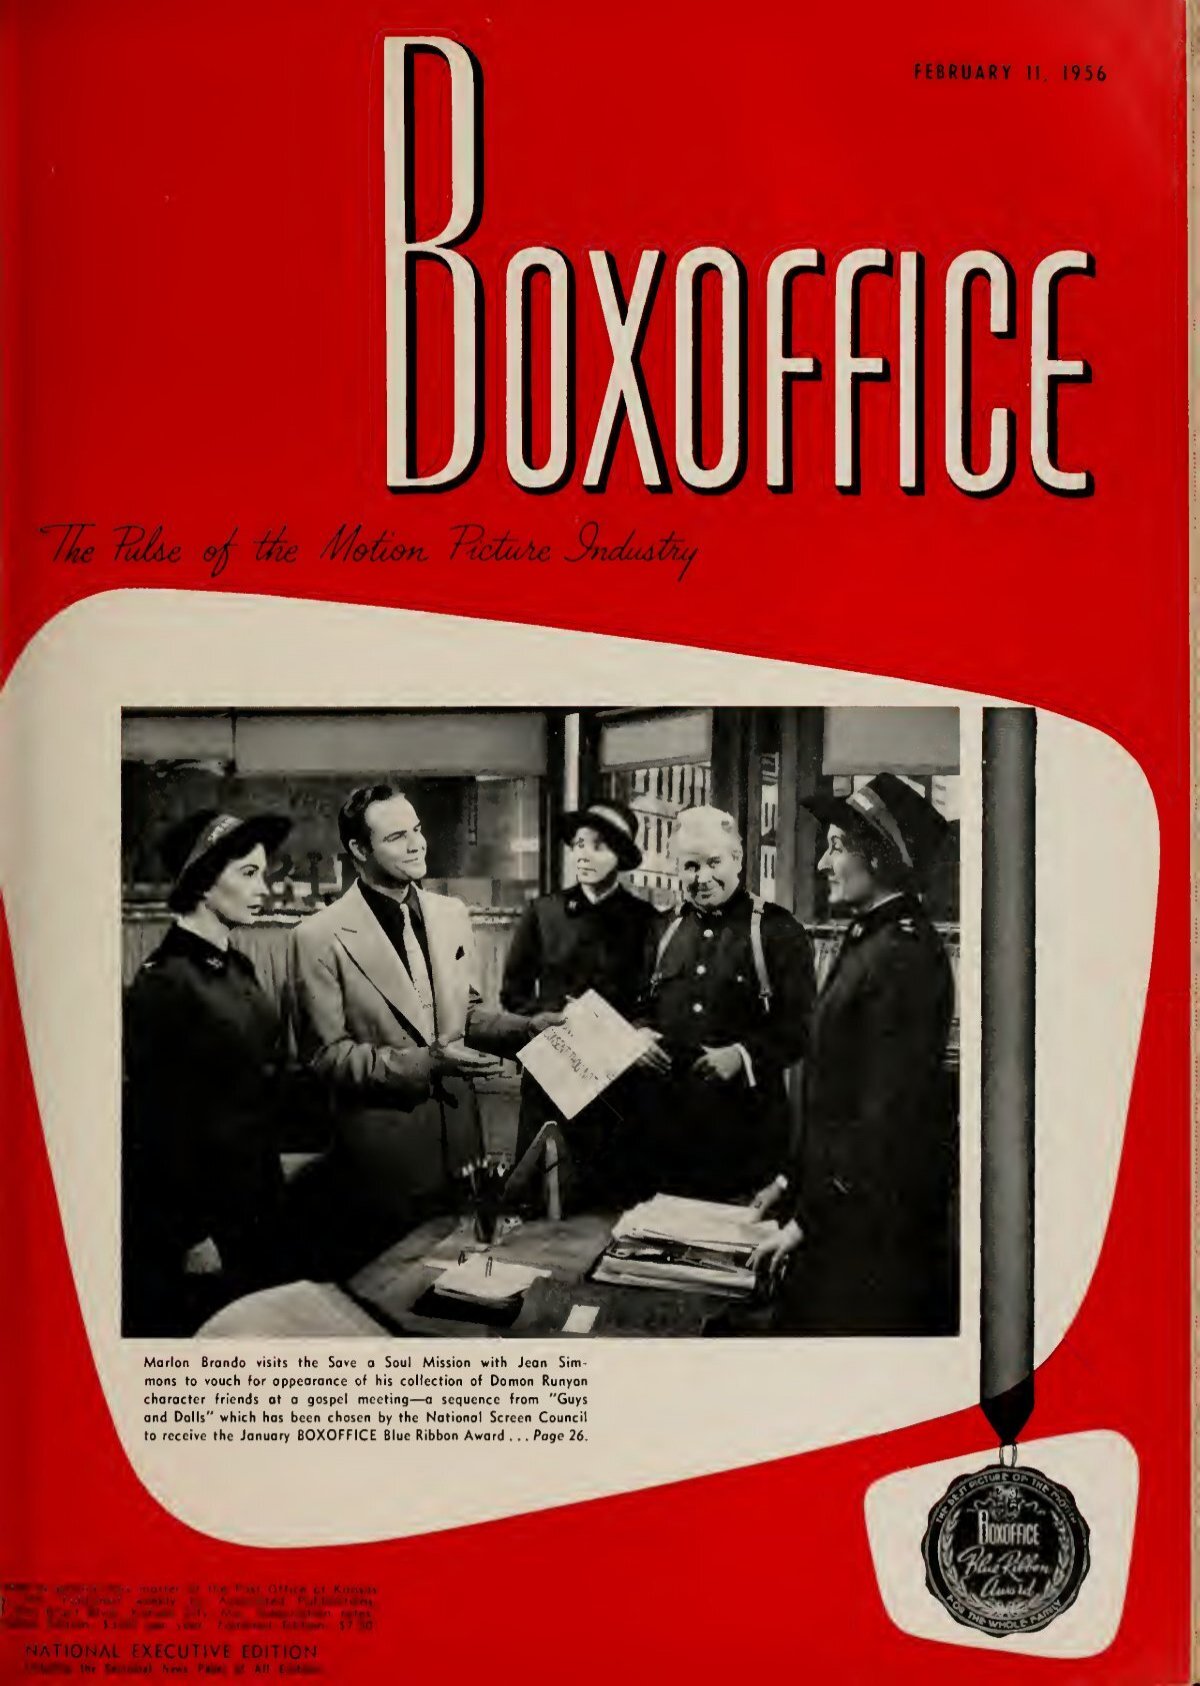 Boxoffice-Febuary.11.1956